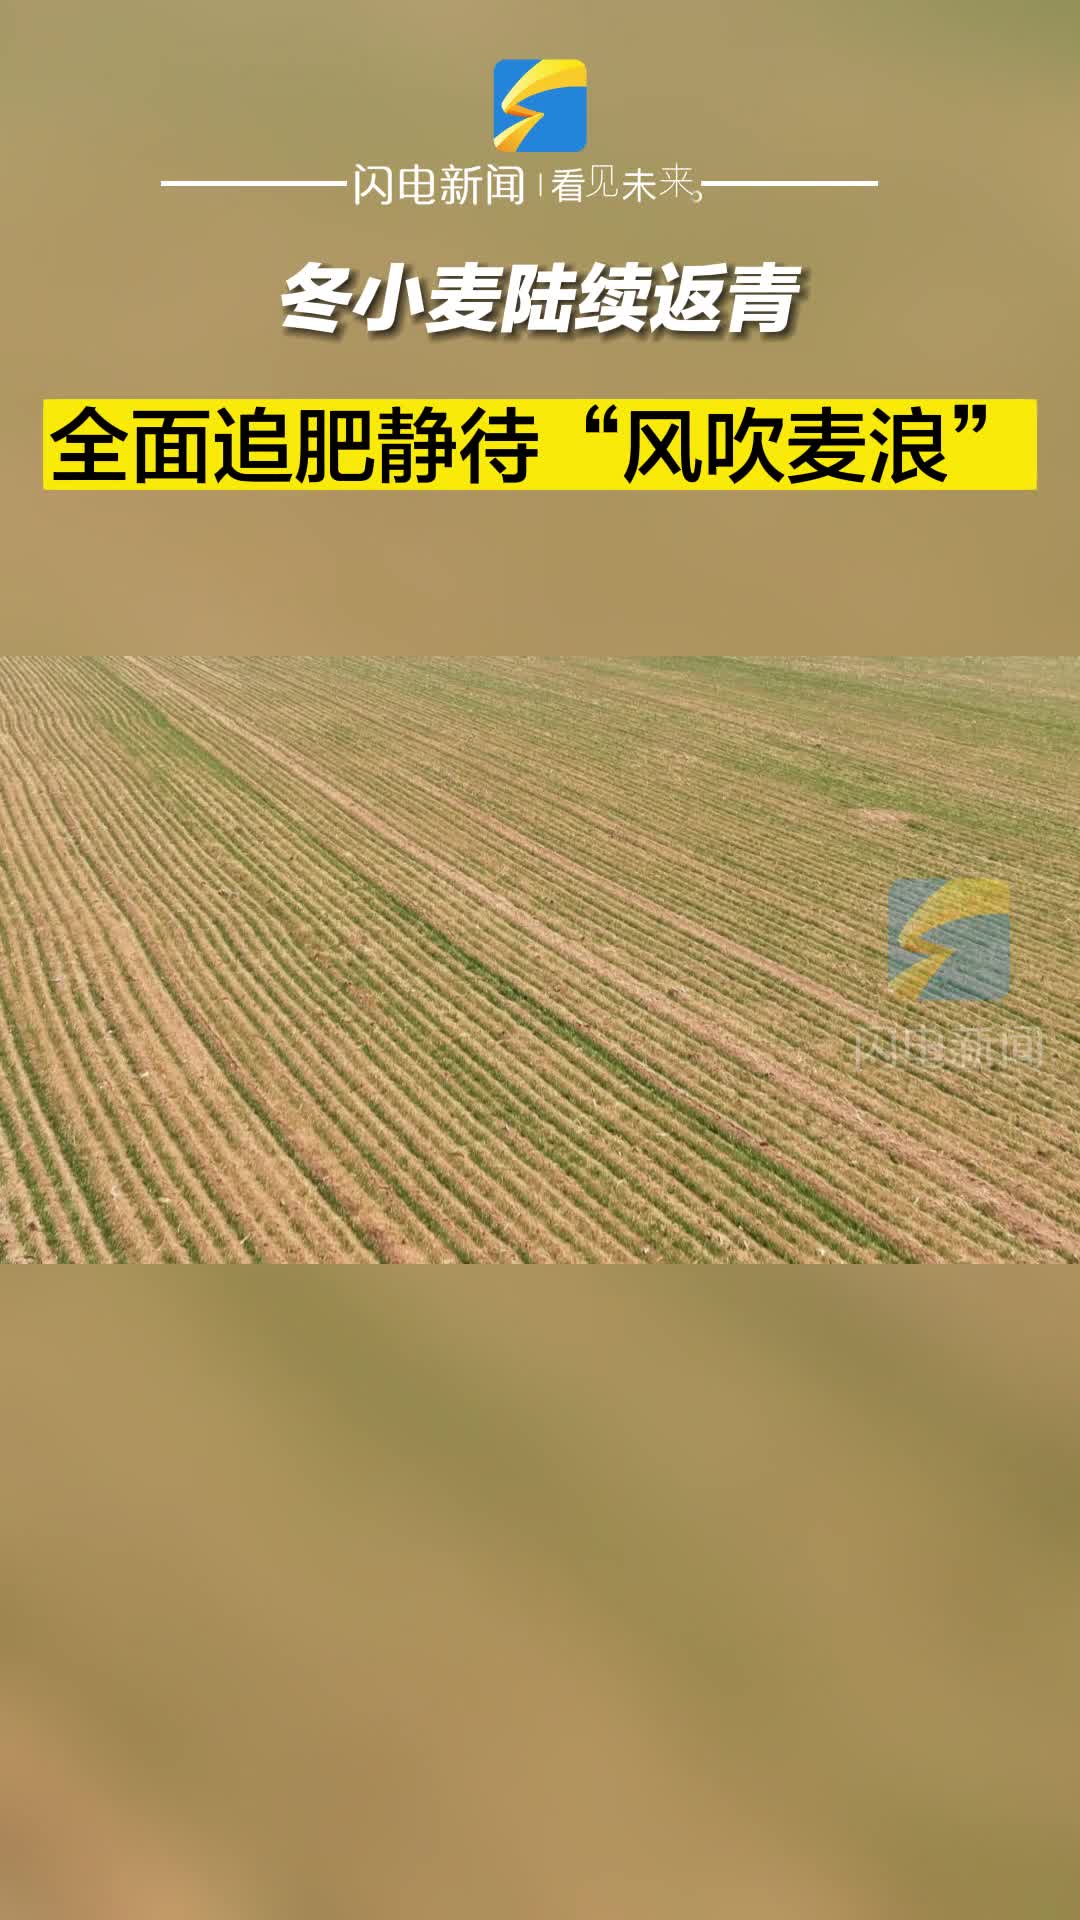 滨州沾化：冬小麦陆续返青 全面追肥静待“风吹麦浪”